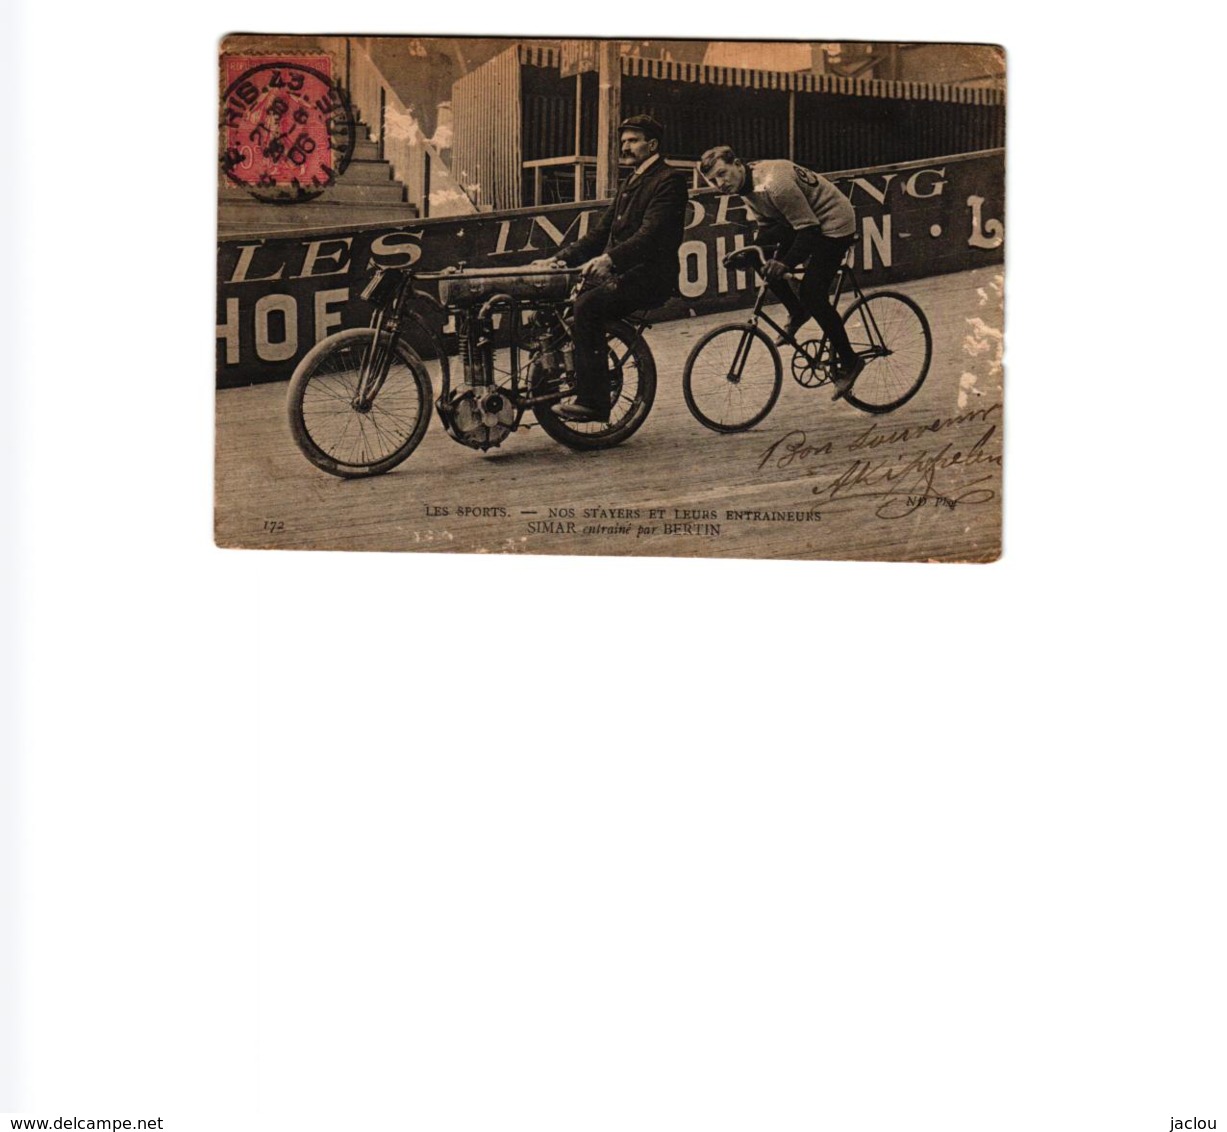 NOS SPORTS -NOS STAYERS ET LEURS ENTRAINEURS SIMAR ENTRAINE PAR BERTIN  59337A - Cyclisme